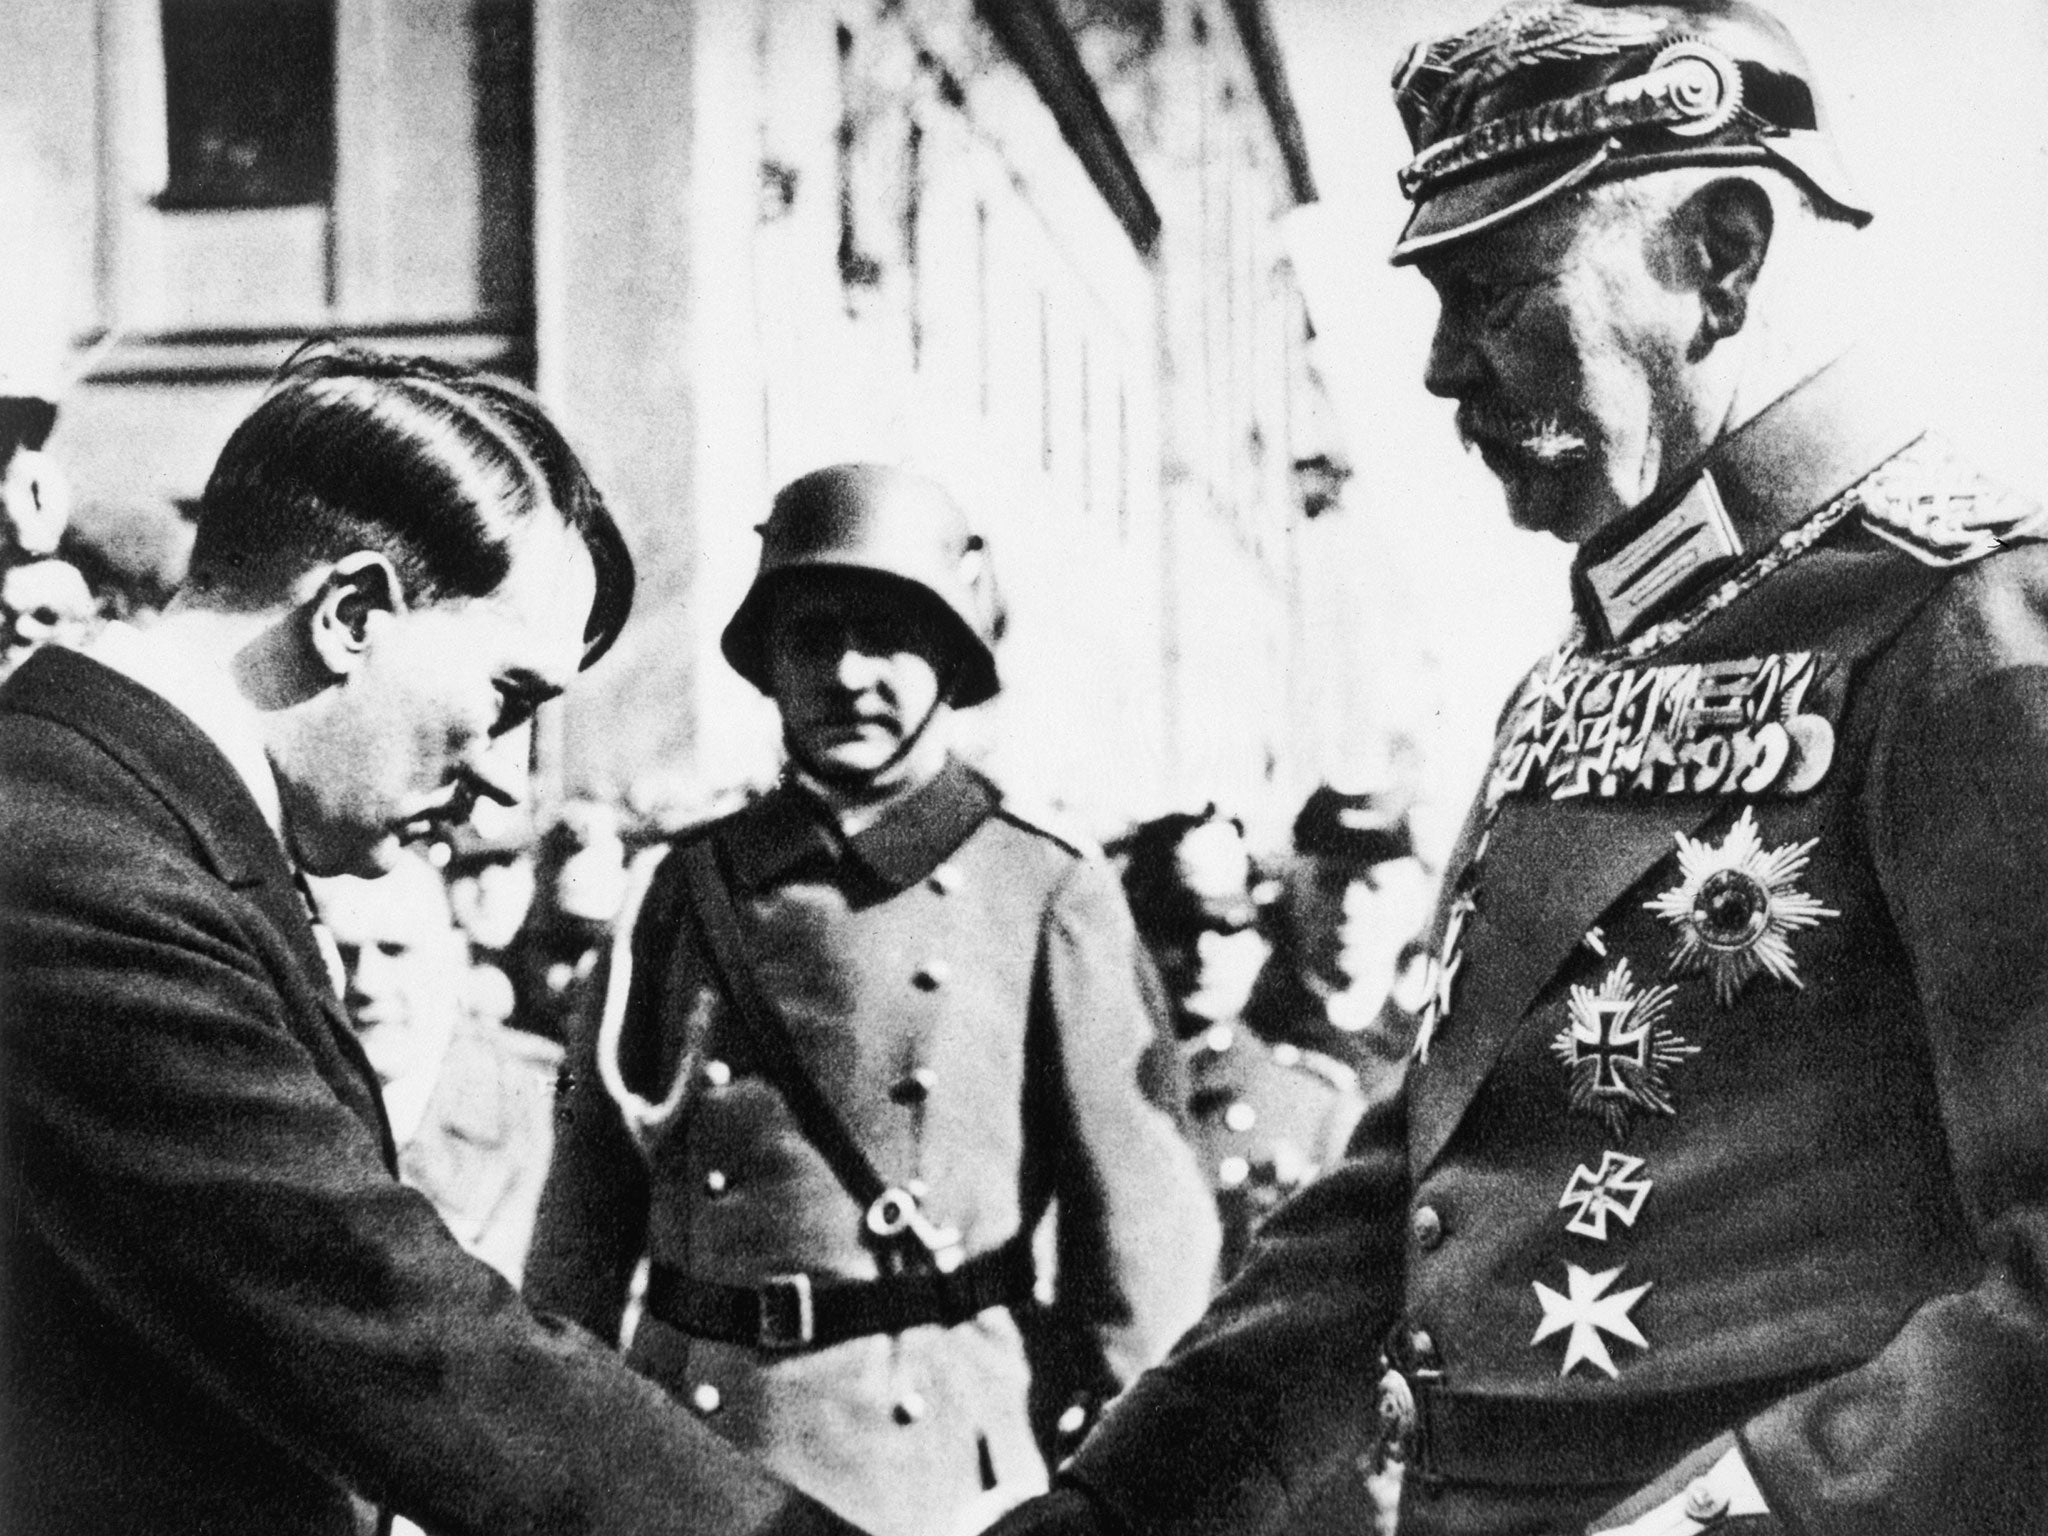 Paul von Hindenburg, the then President, shakes hands with Adolf Hitler at Potsdam’s Garrison Church in 1933